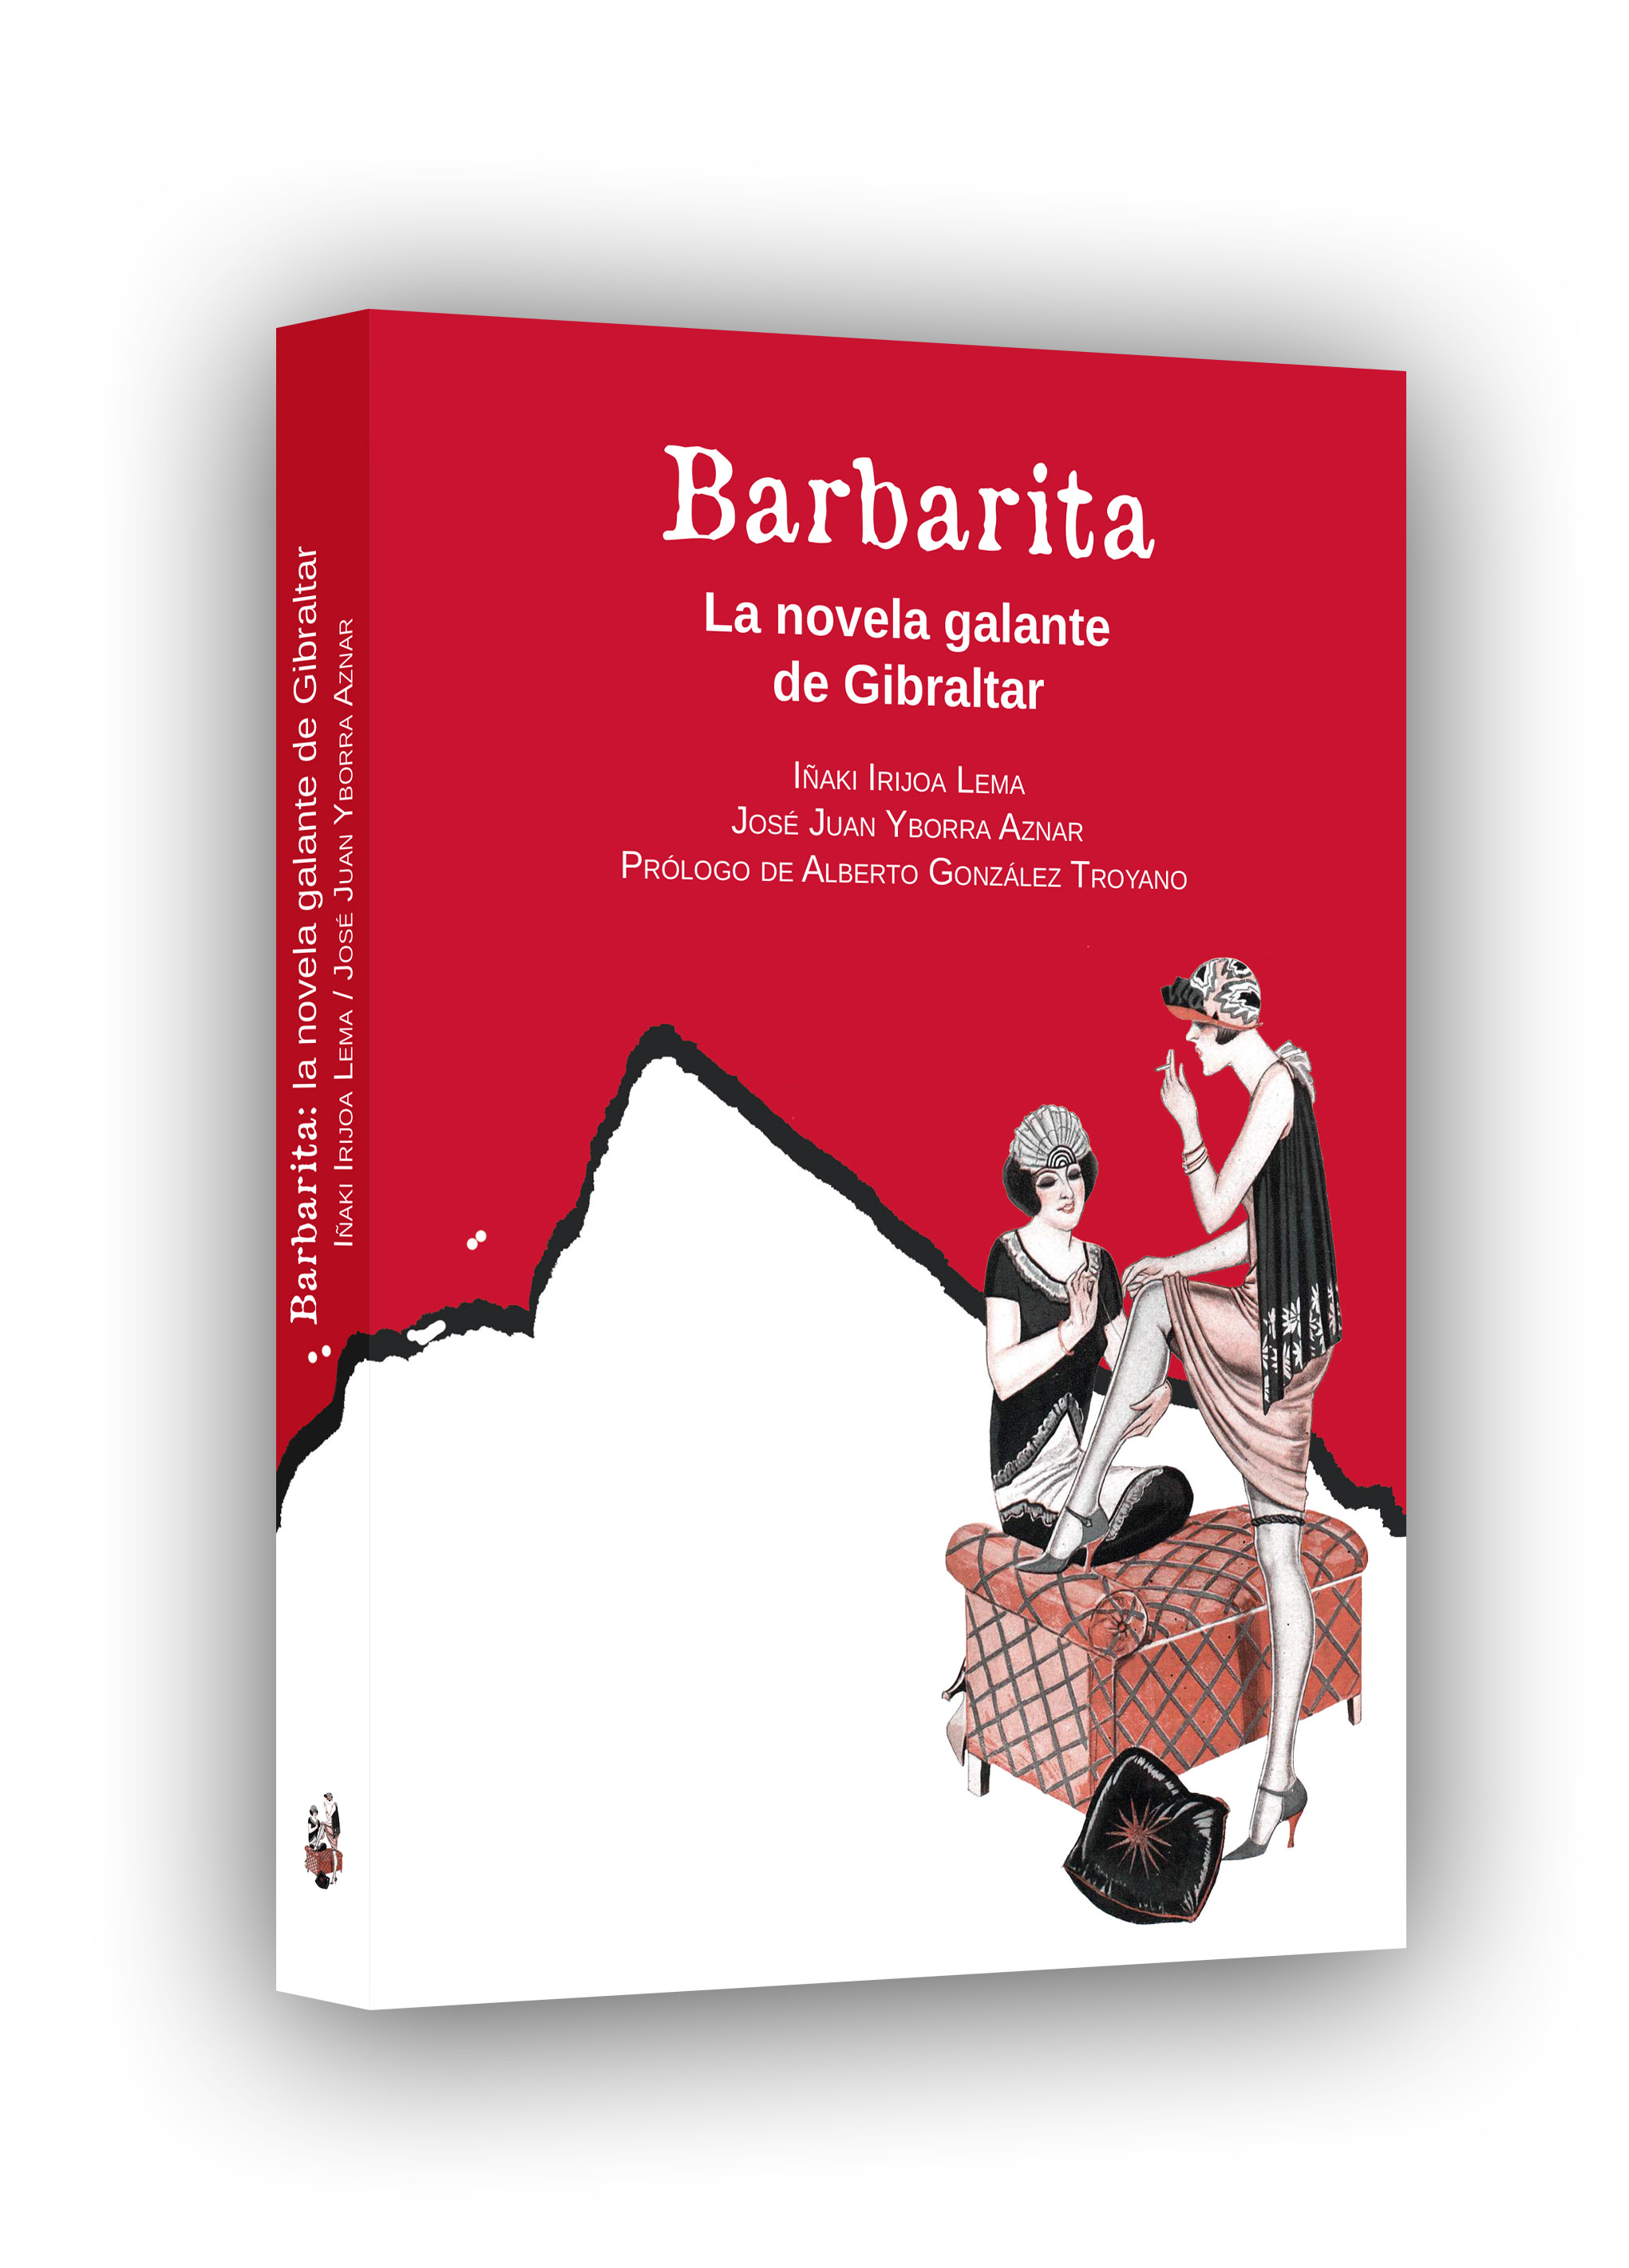 Imagen de portada del libro Barbarita